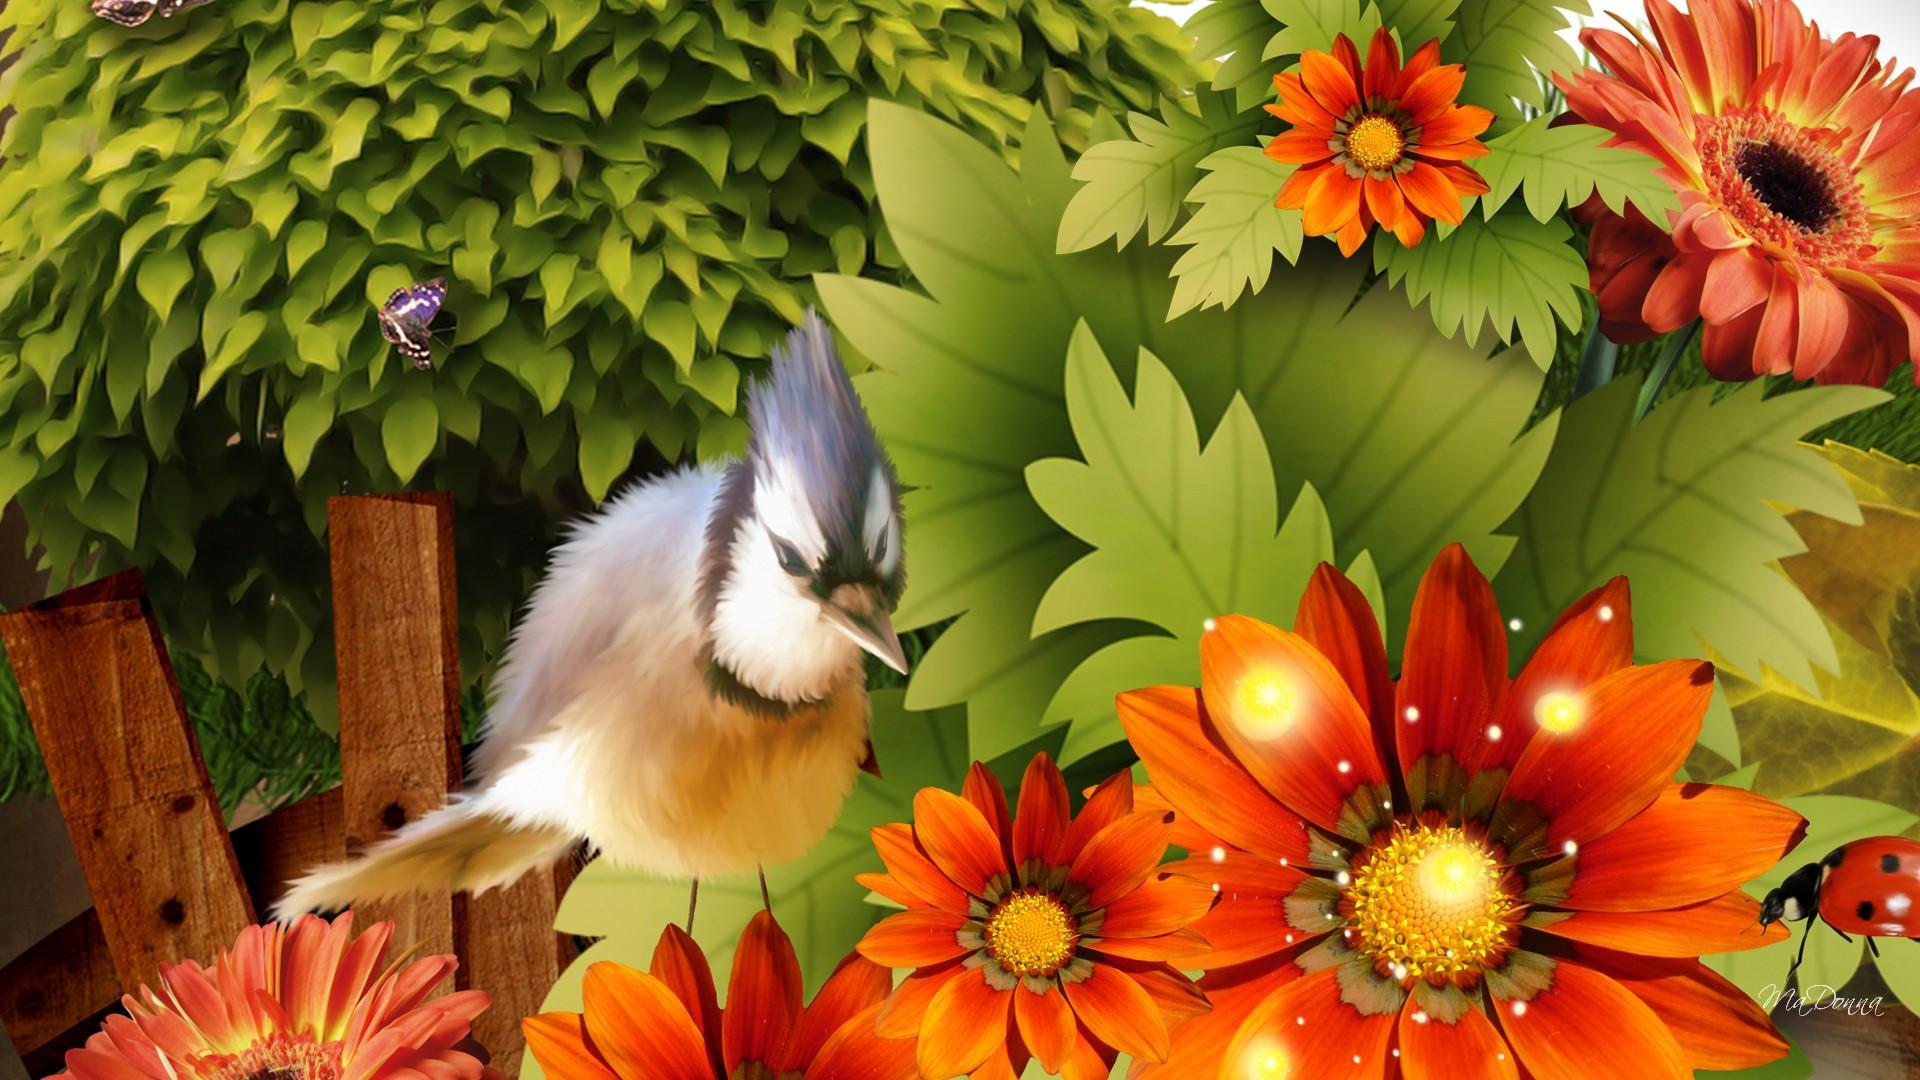 birds of paradise flower wallpaper